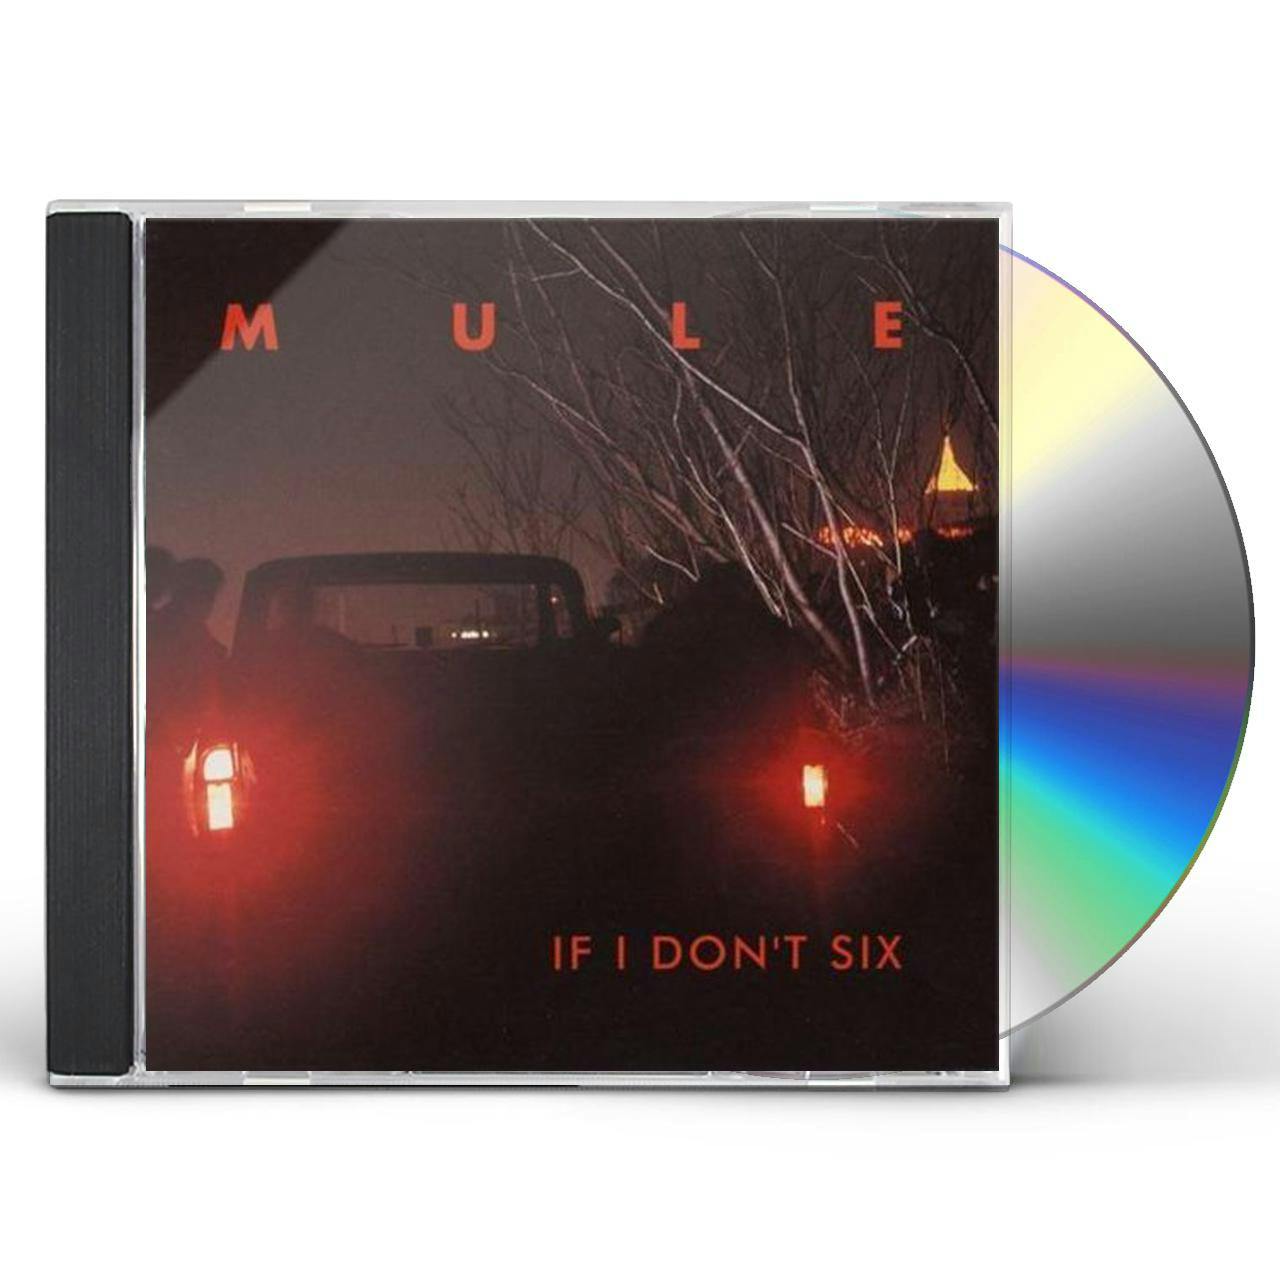 Mule　CD　DON'T　IF　I　SIX